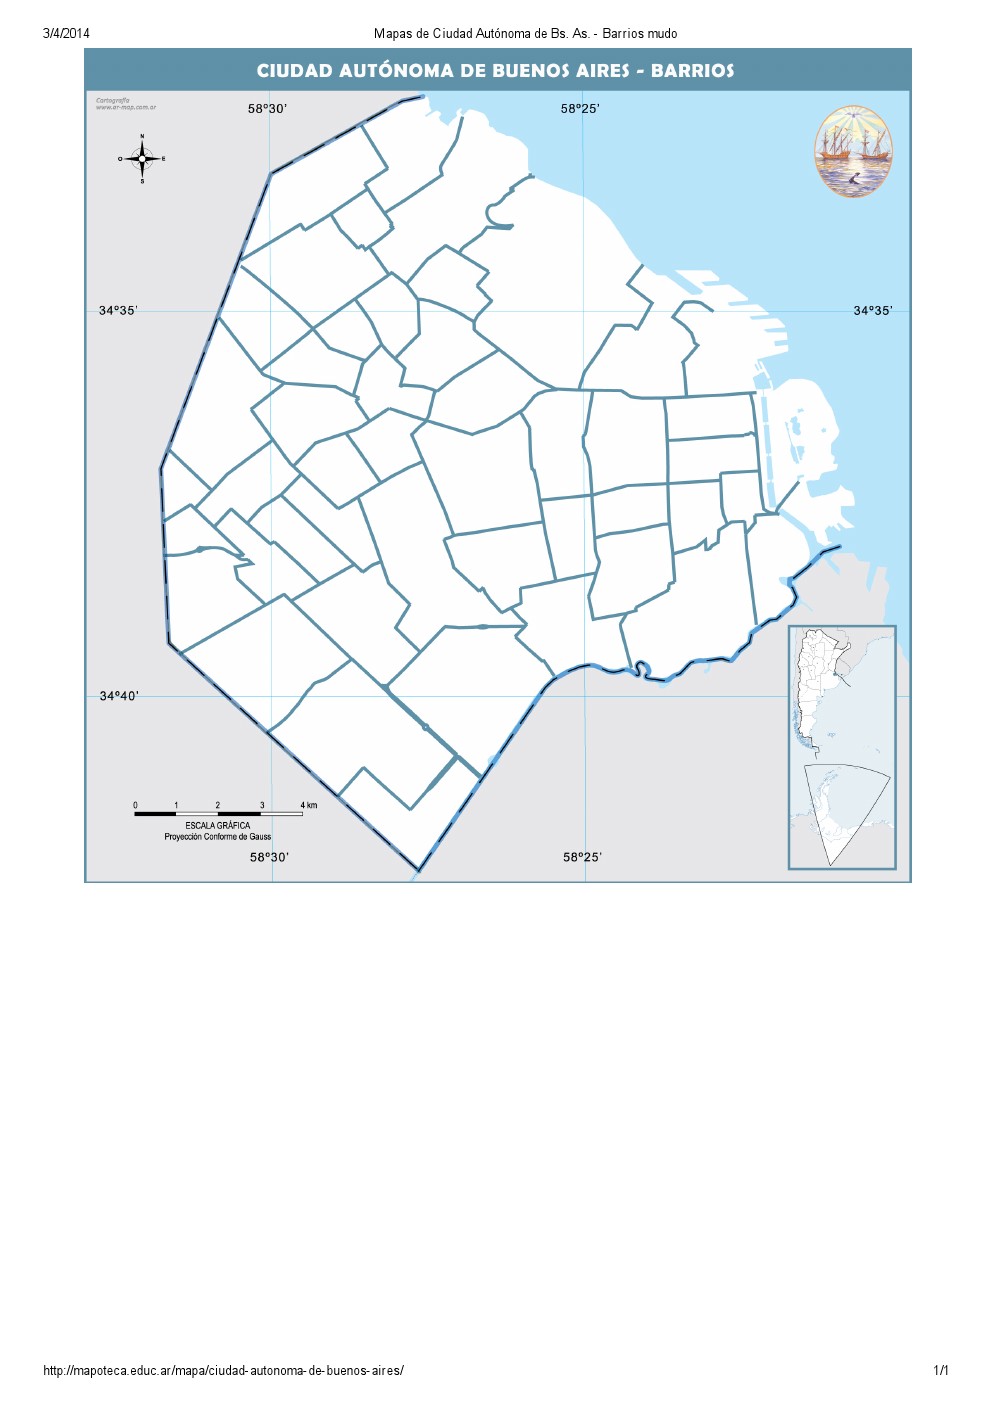 Mapa de barrios mudo de la ciudad de Buenos Aires. Mapoteca de Educ.ar